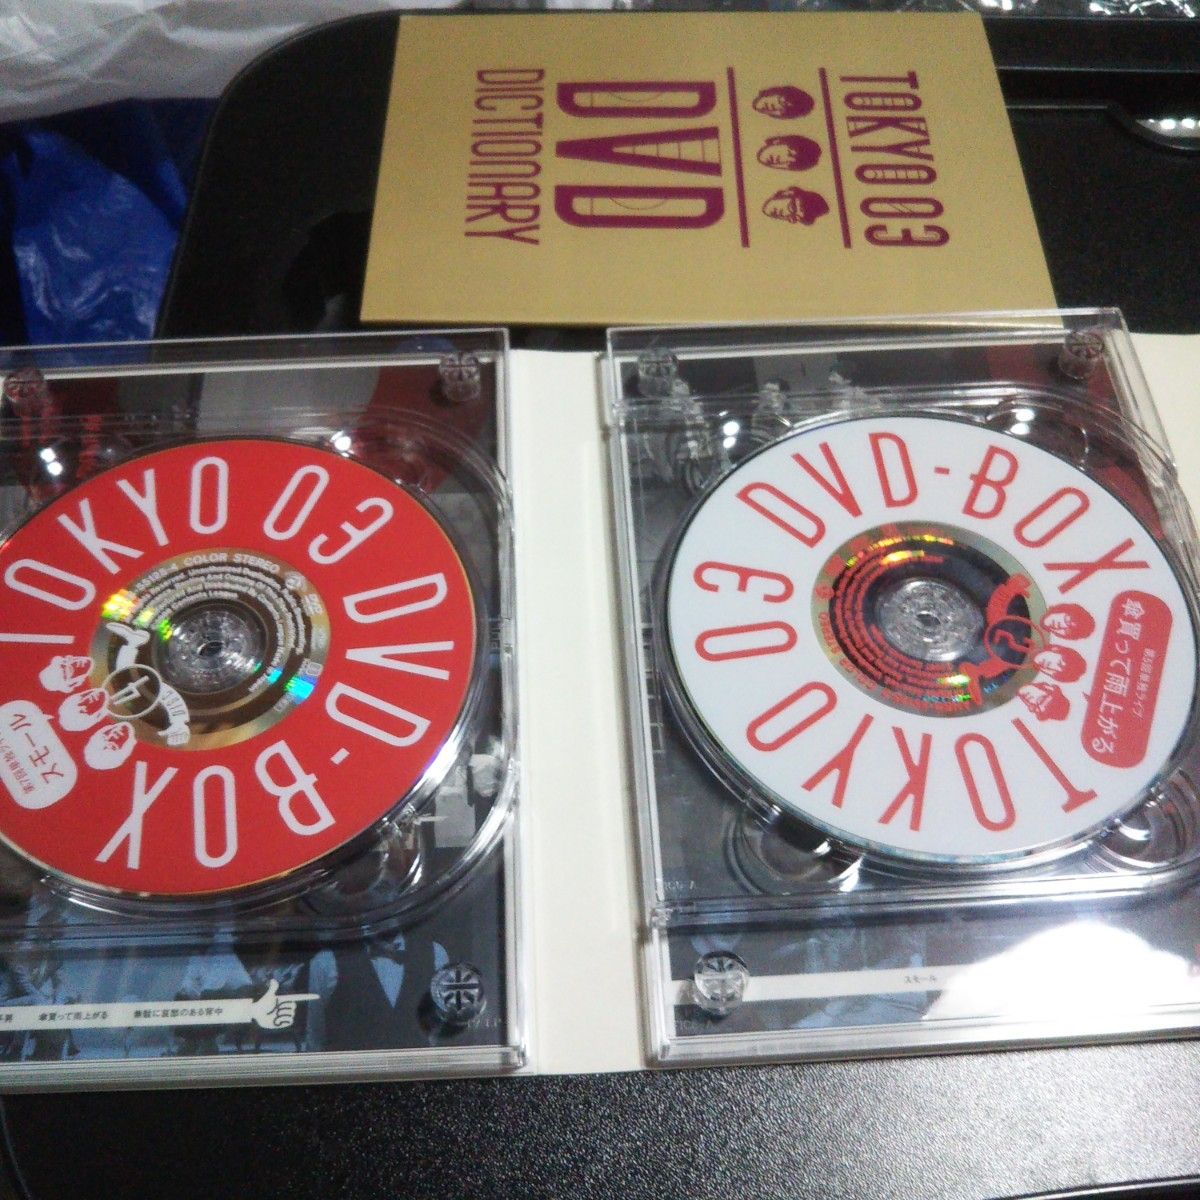 東京03 DVD-BOX 